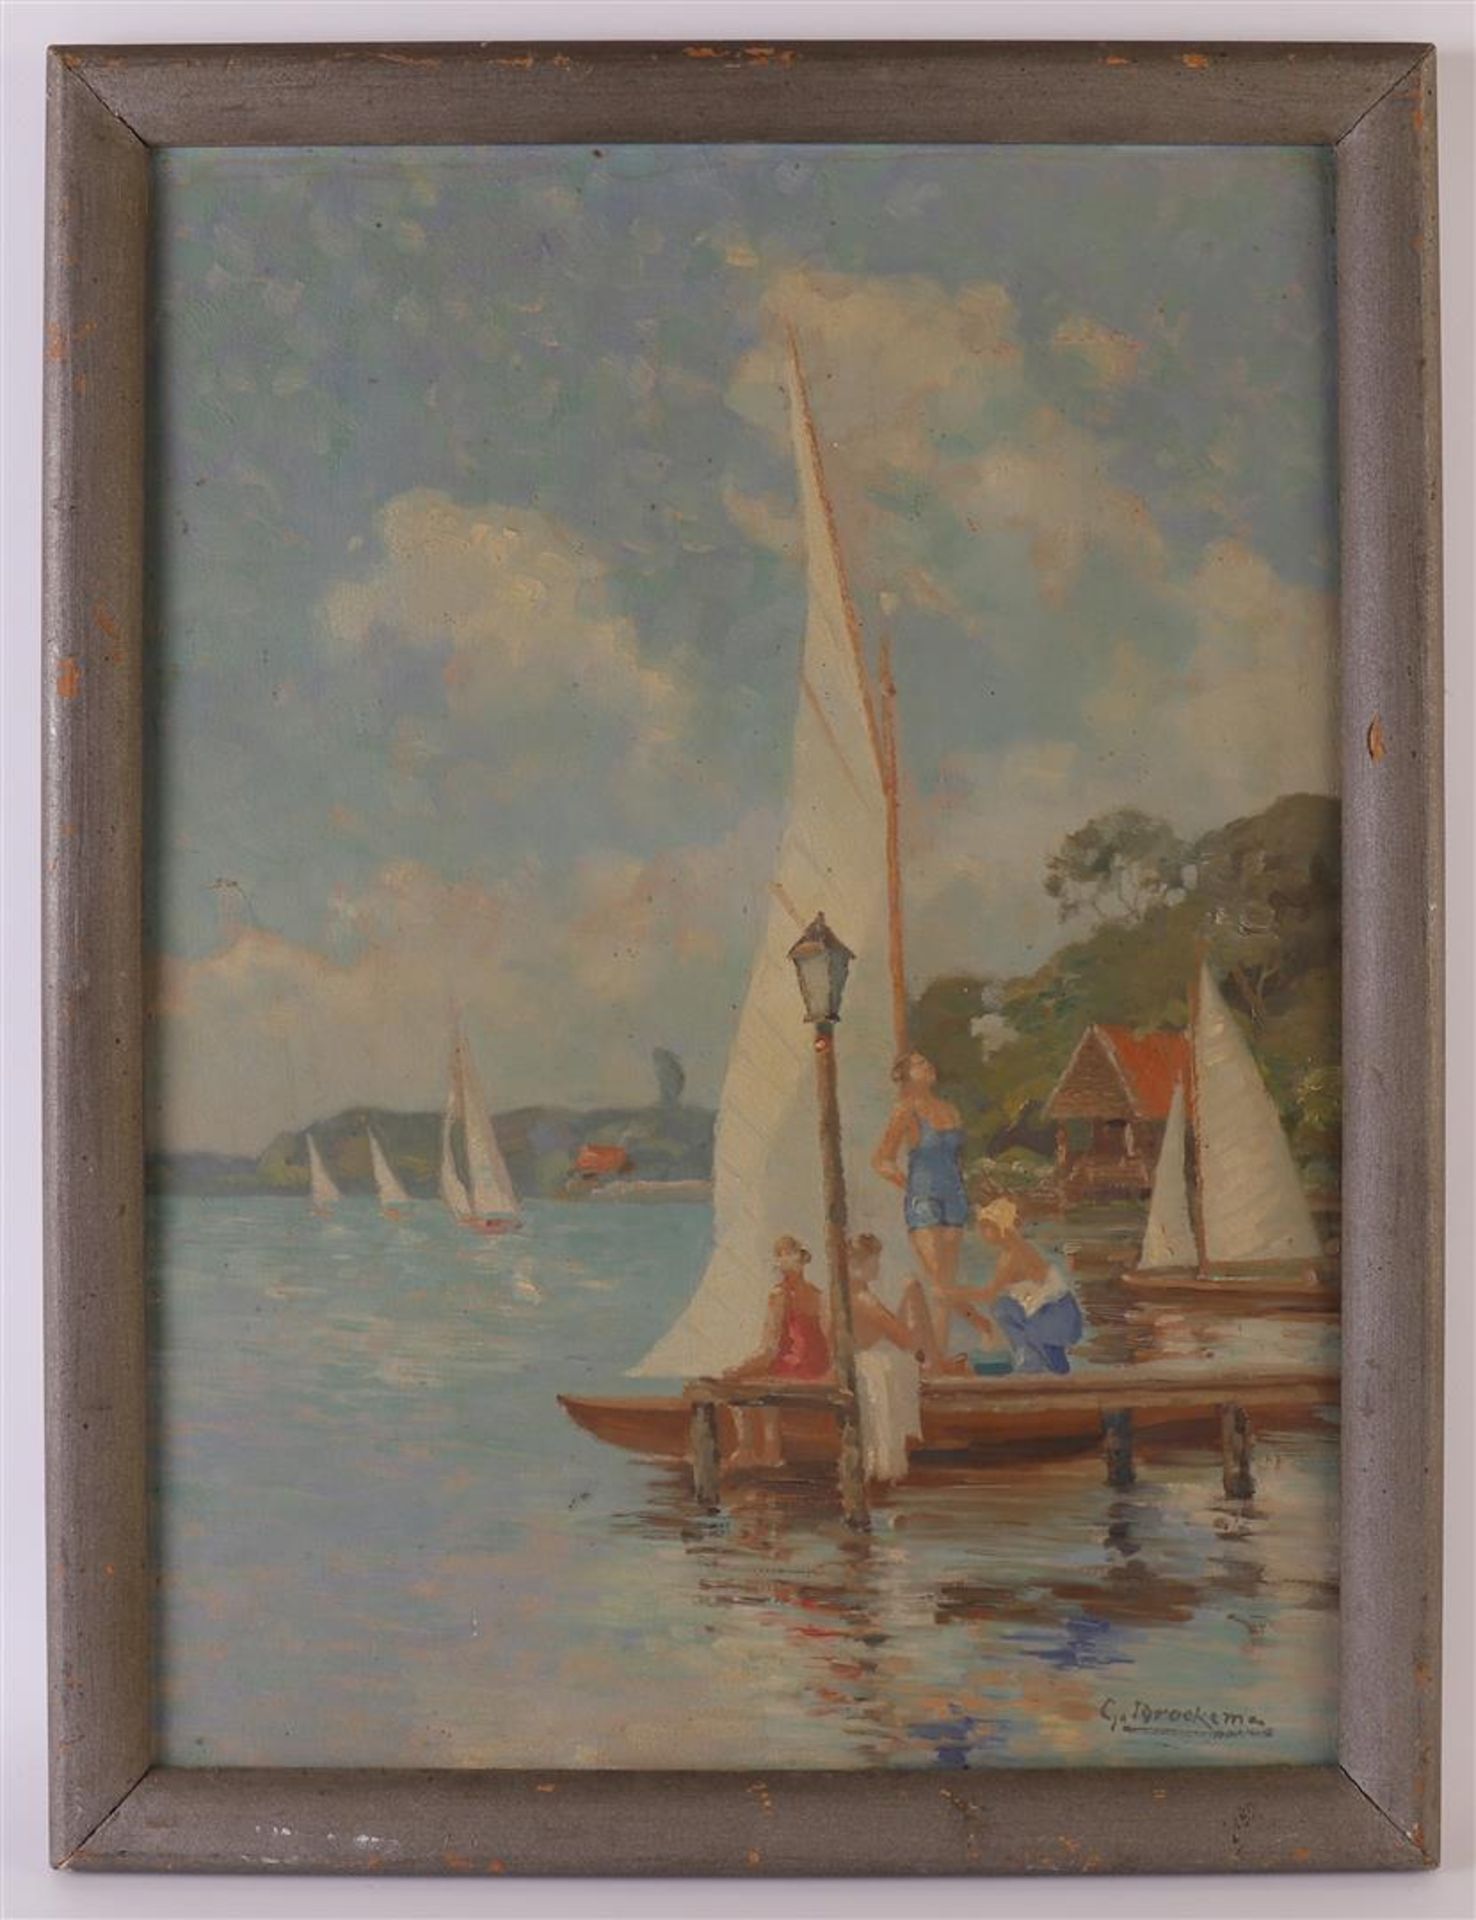 Broekema, Gerardus Berend (Assen 1866 - 1946 Kampen) "Women at moored sailing boat", signed in